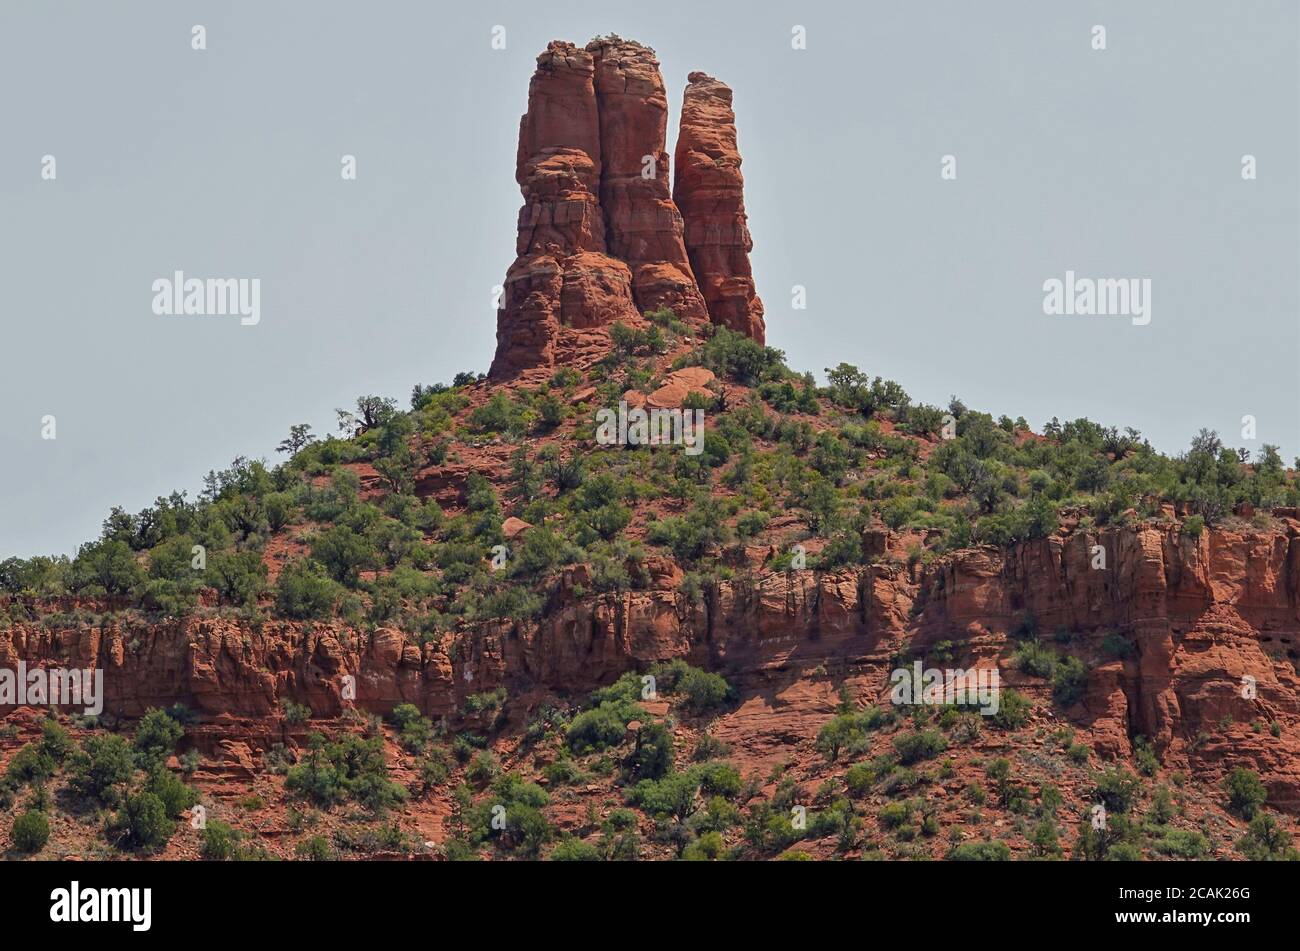 En explorant les différents sentiers et routes arrière autour de Sedona Arizona, vous pourrez admirer des vues époustouflantes et des formations rocheuses incroyables. Banque D'Images